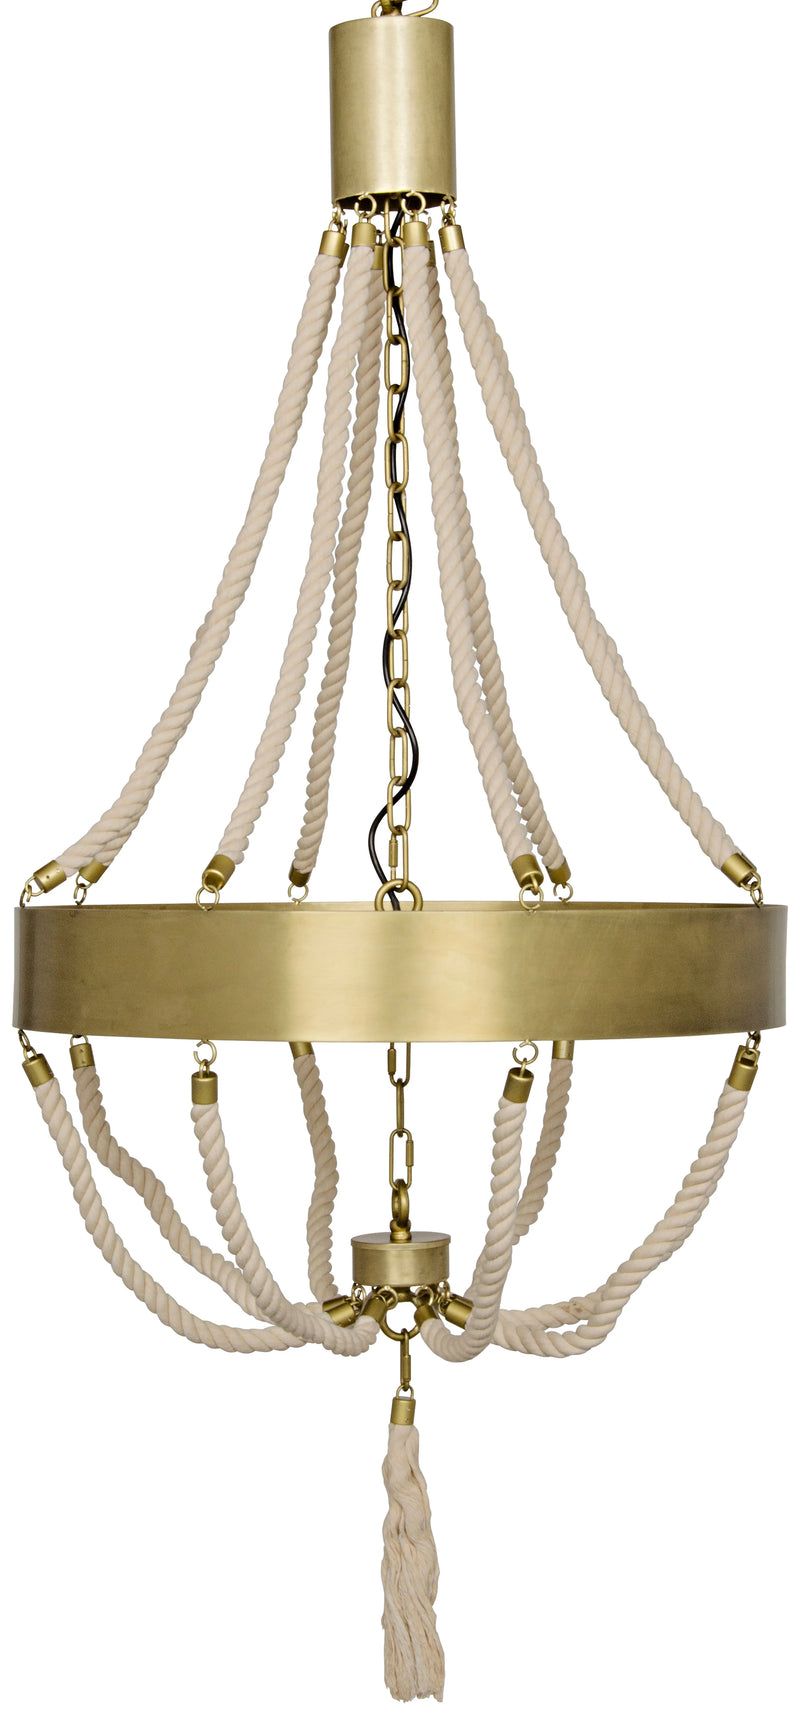 media image for alec chandelier design by noir 1 280